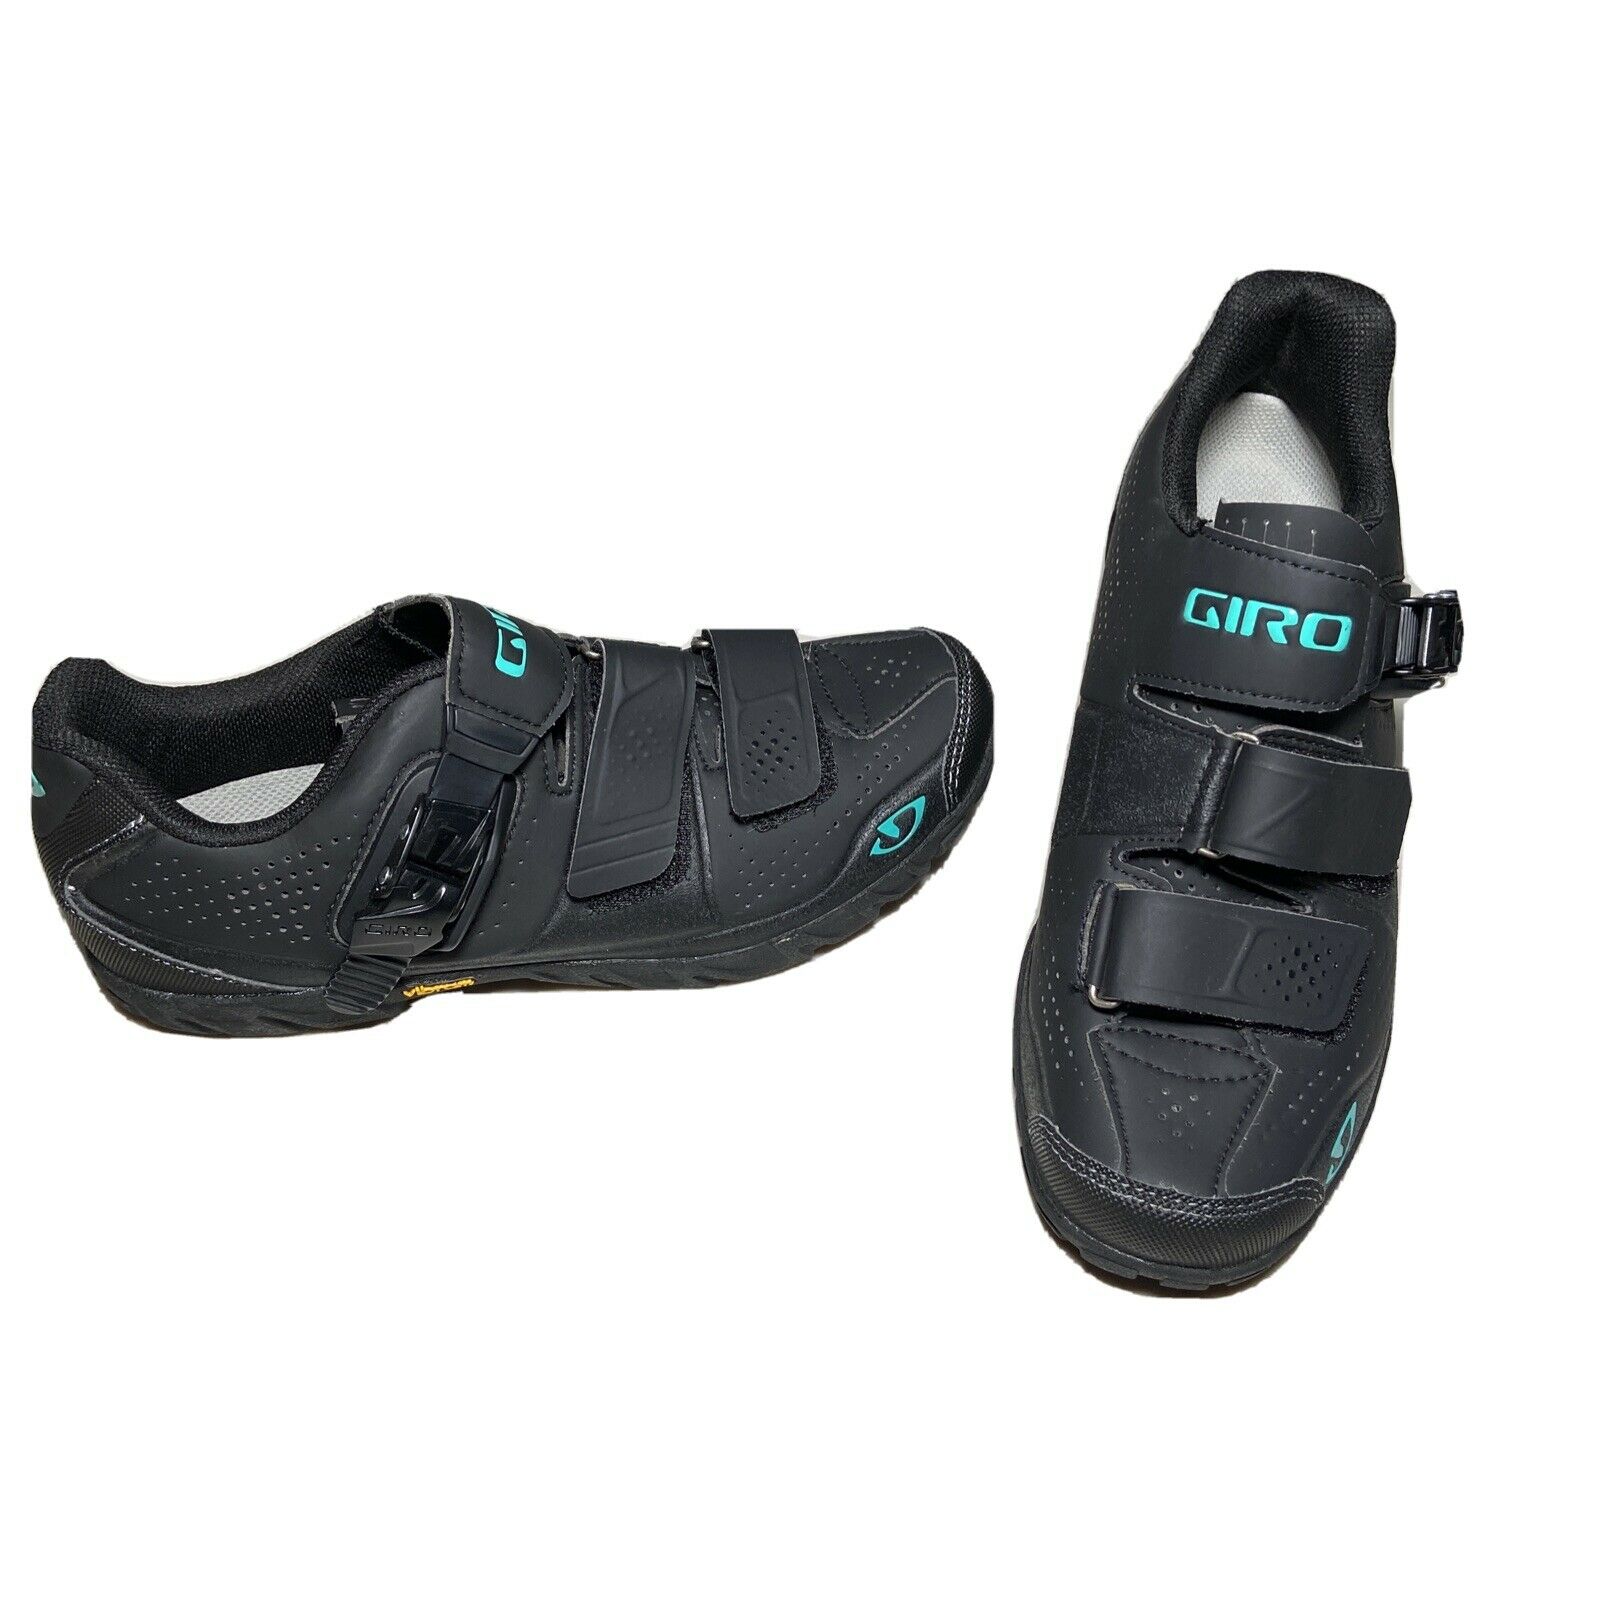 Giro Terraduro Mtb Cycling Shoes Mountain Bike Black & Blue Women's Size 8